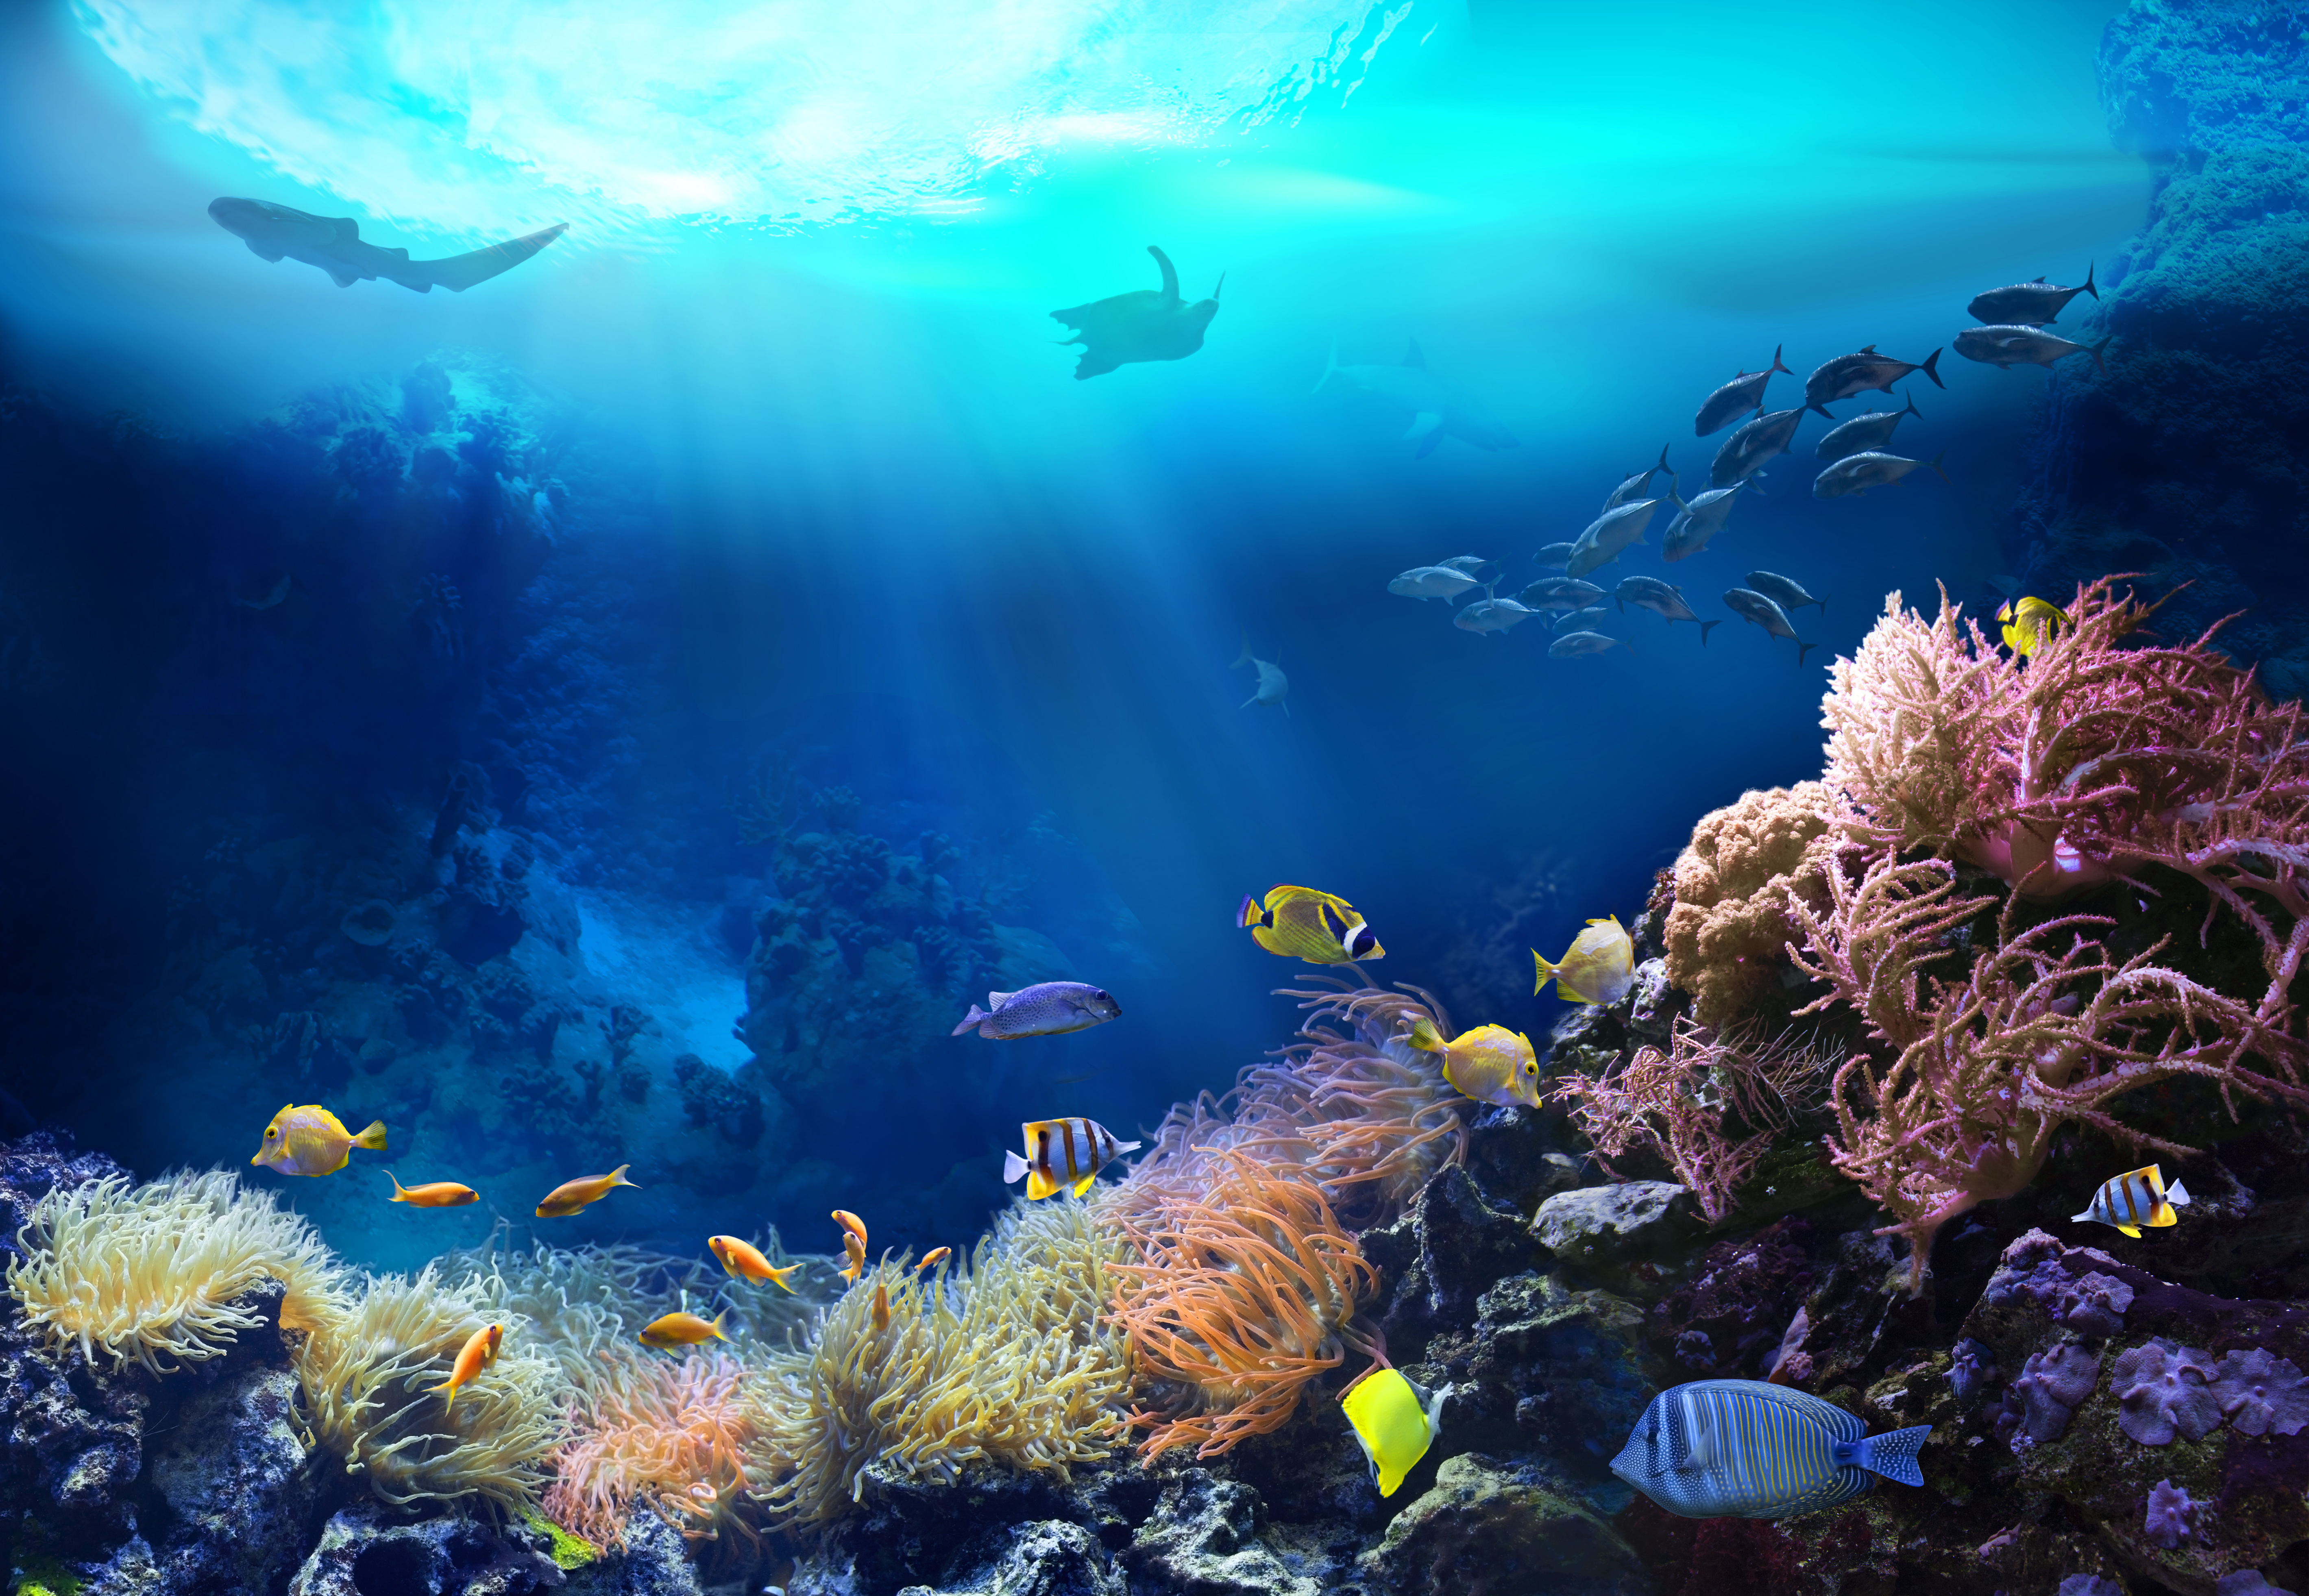 Undersea Image Adobe